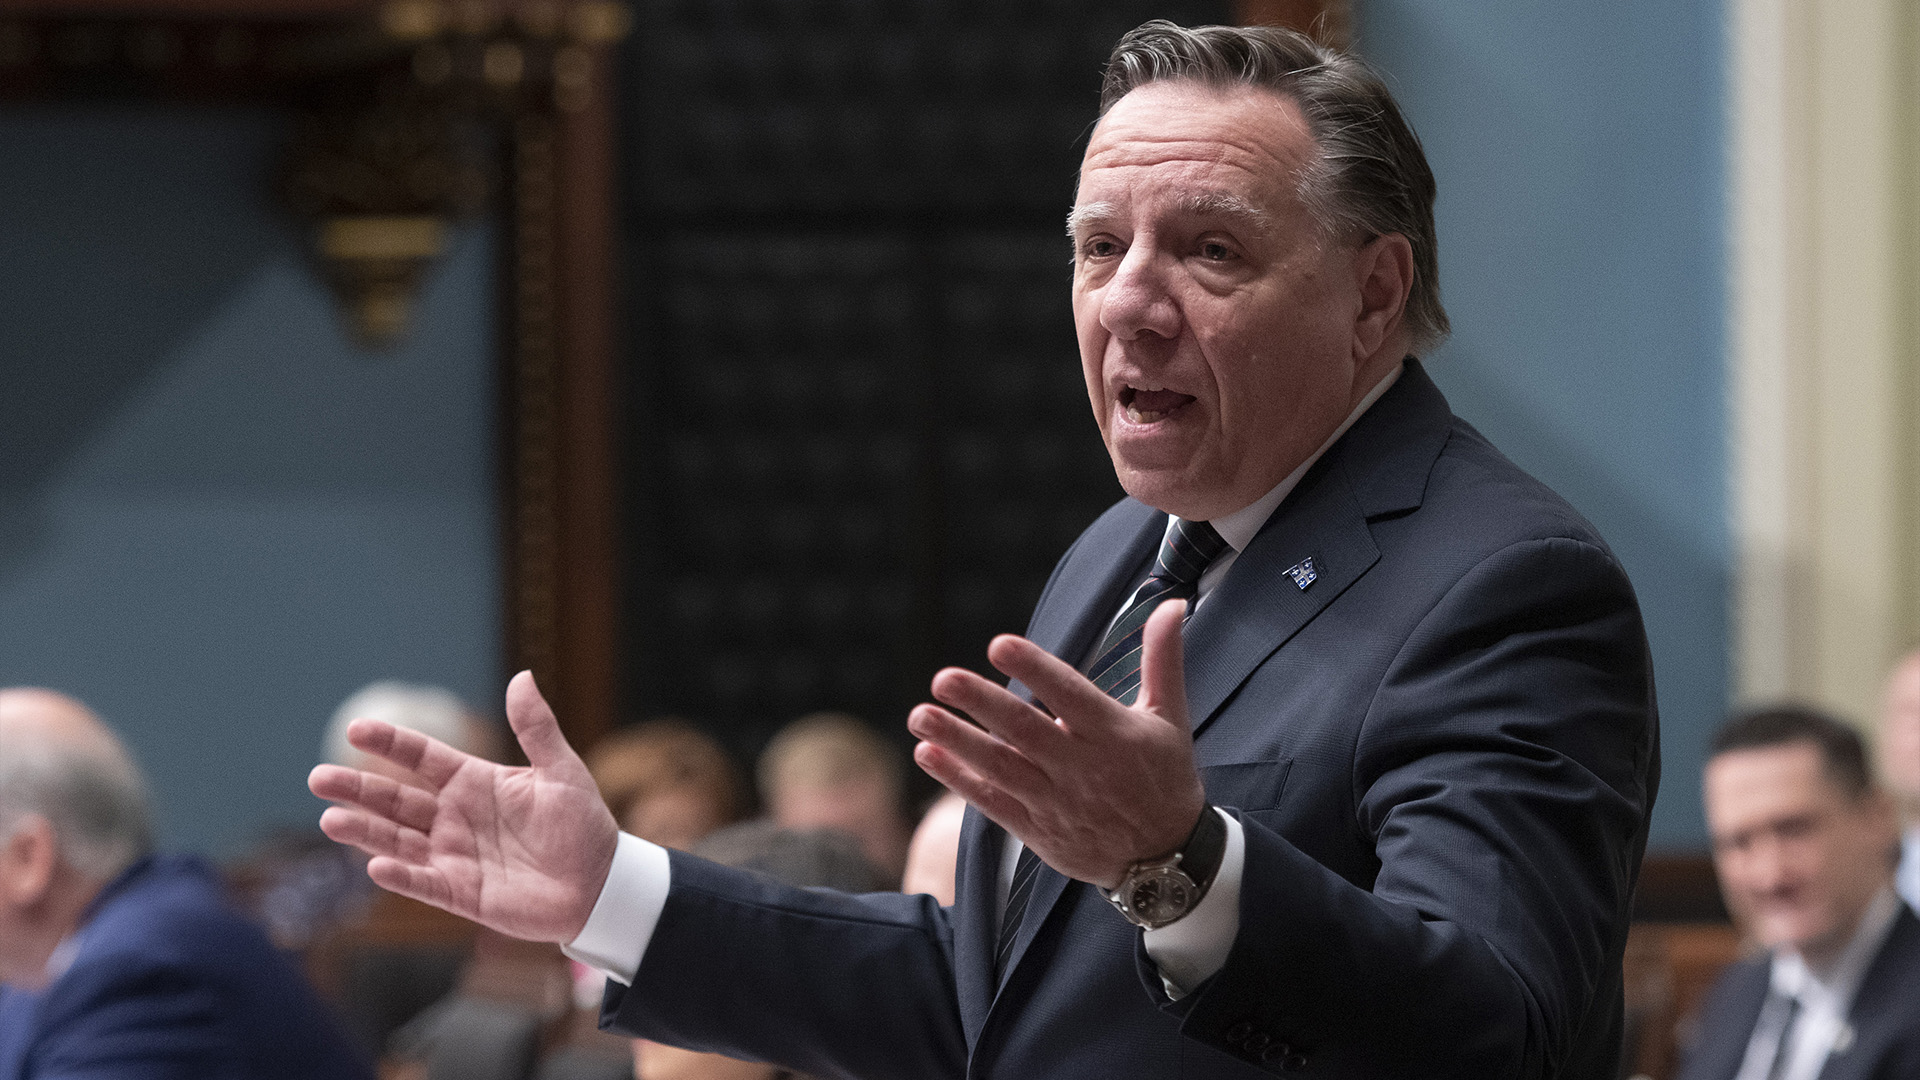 Le premier ministre du Québec, François Legault, répond à l'opposition lors de la période des questions, le mardi 31 mai 2022 à l'Assemblée législative de Québec.